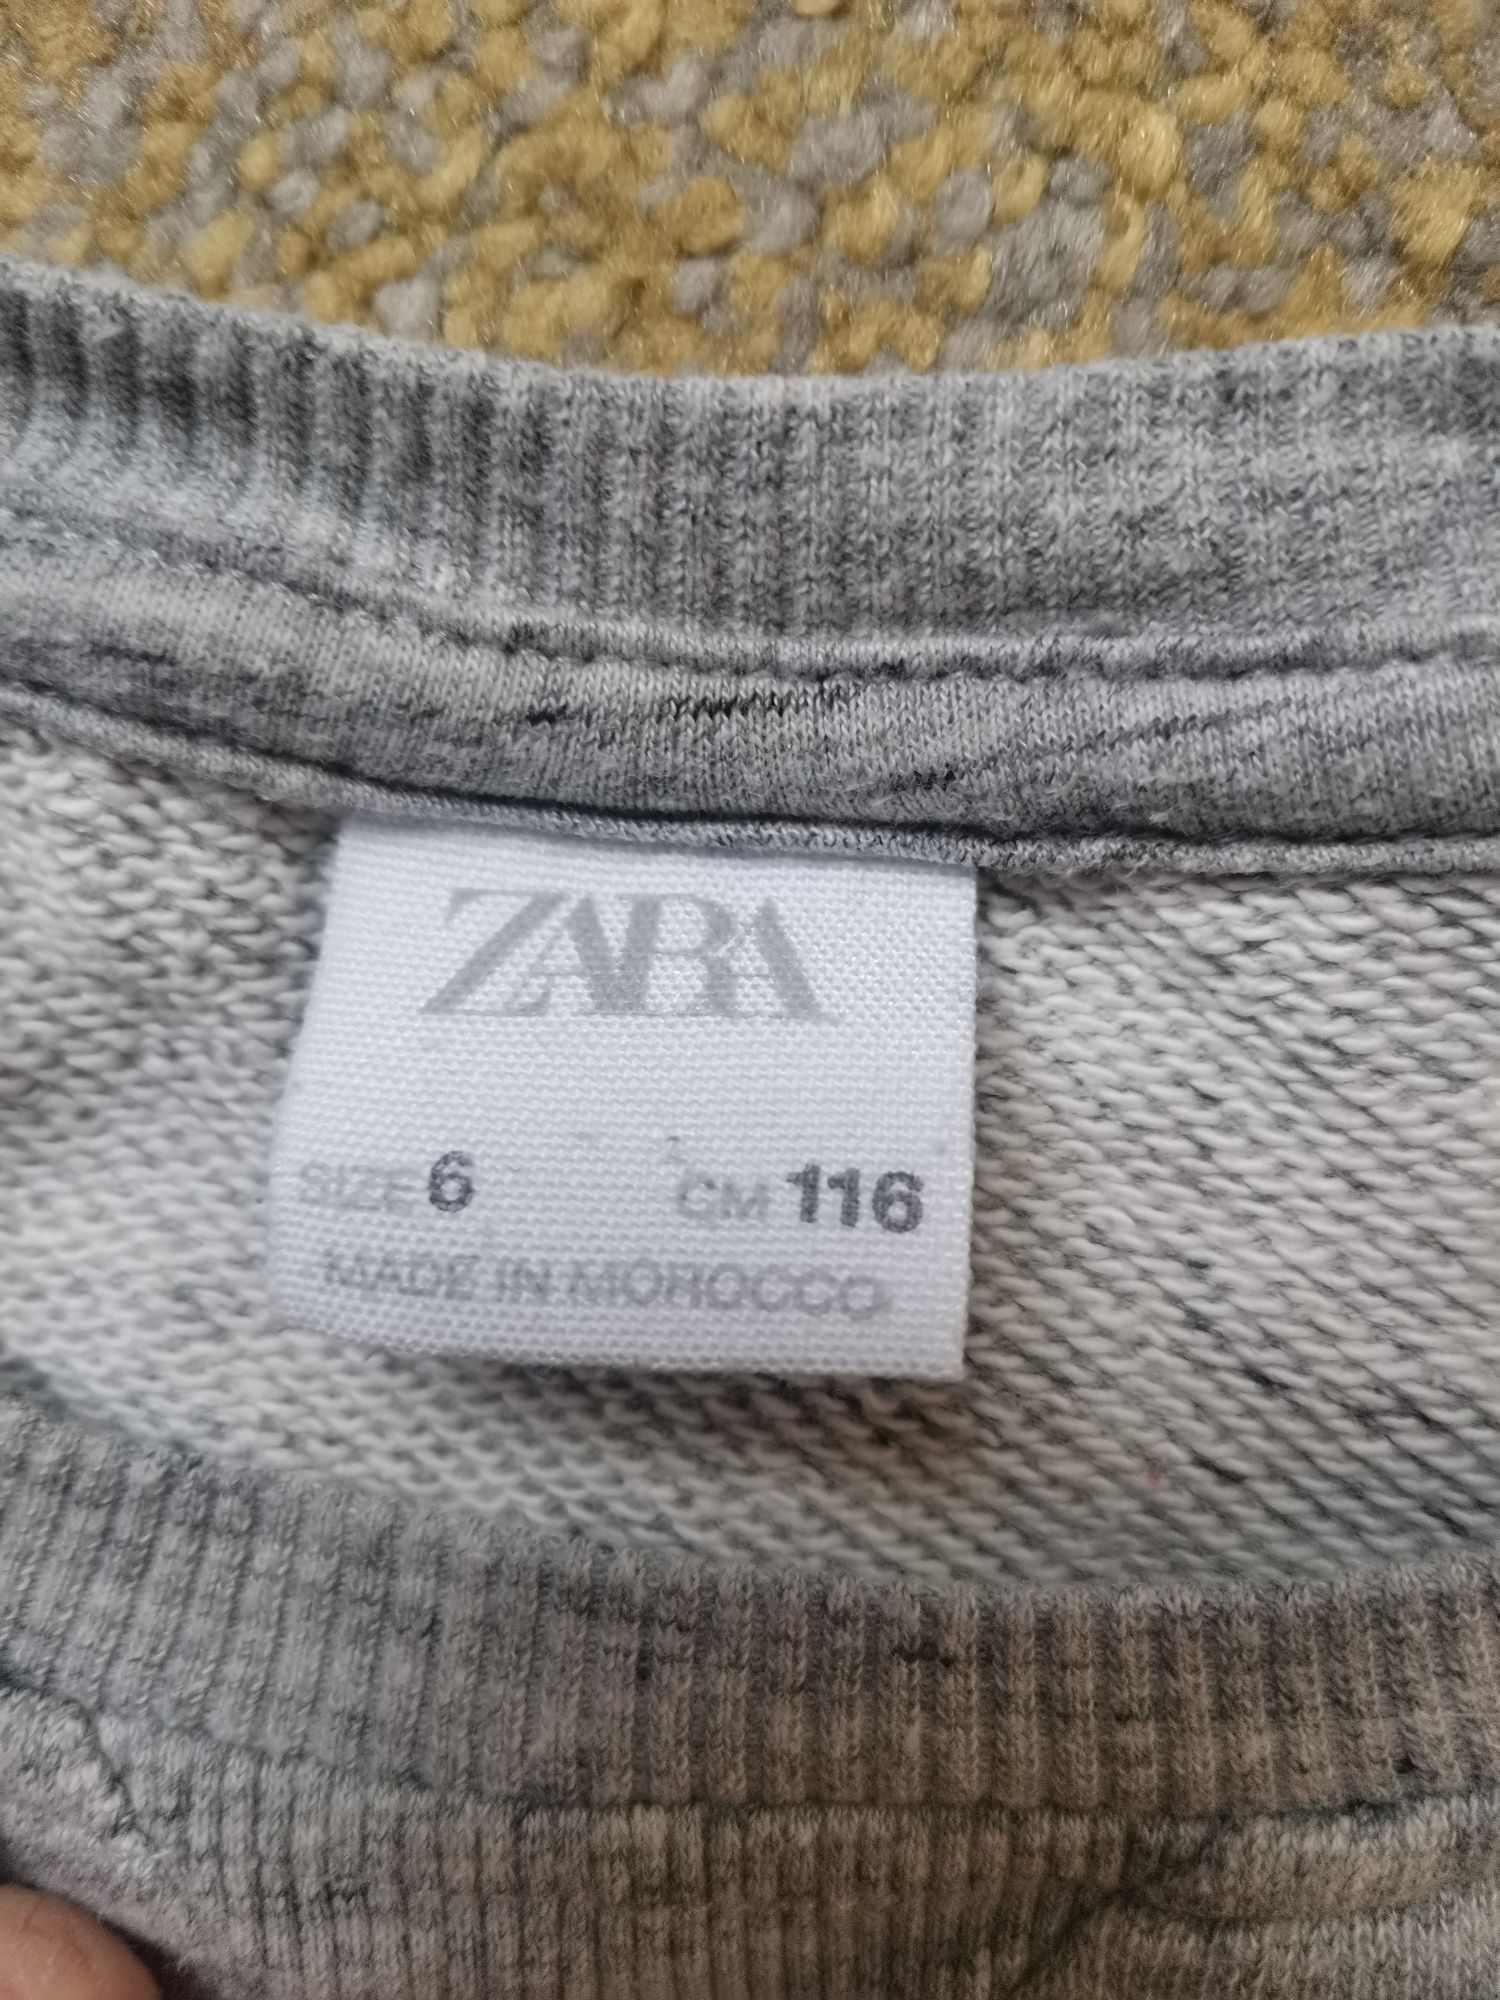 Bluza trening Zara boys nr.116